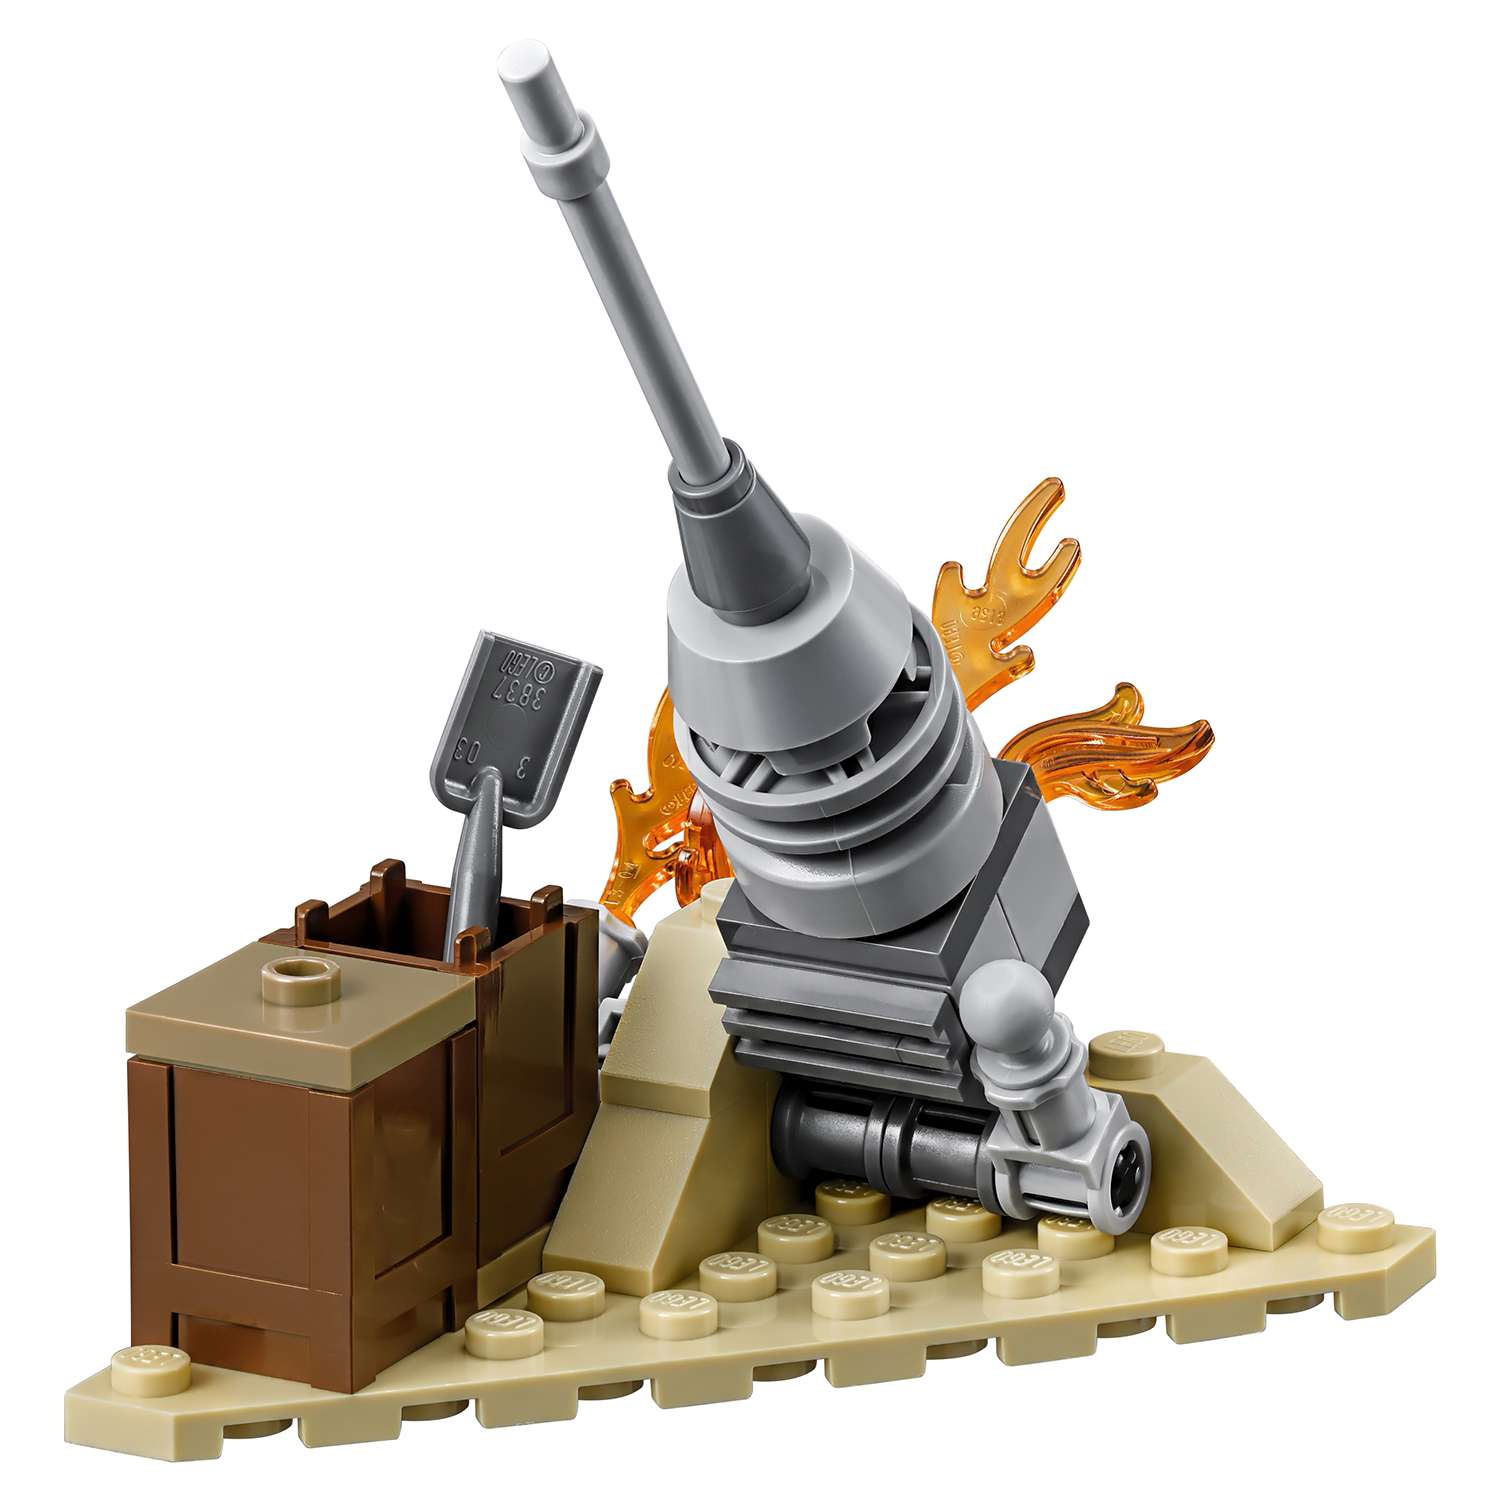 Конструктор LEGO Star Wars TM Истребитель Сопротивления типа Икс (75149) - фото 13